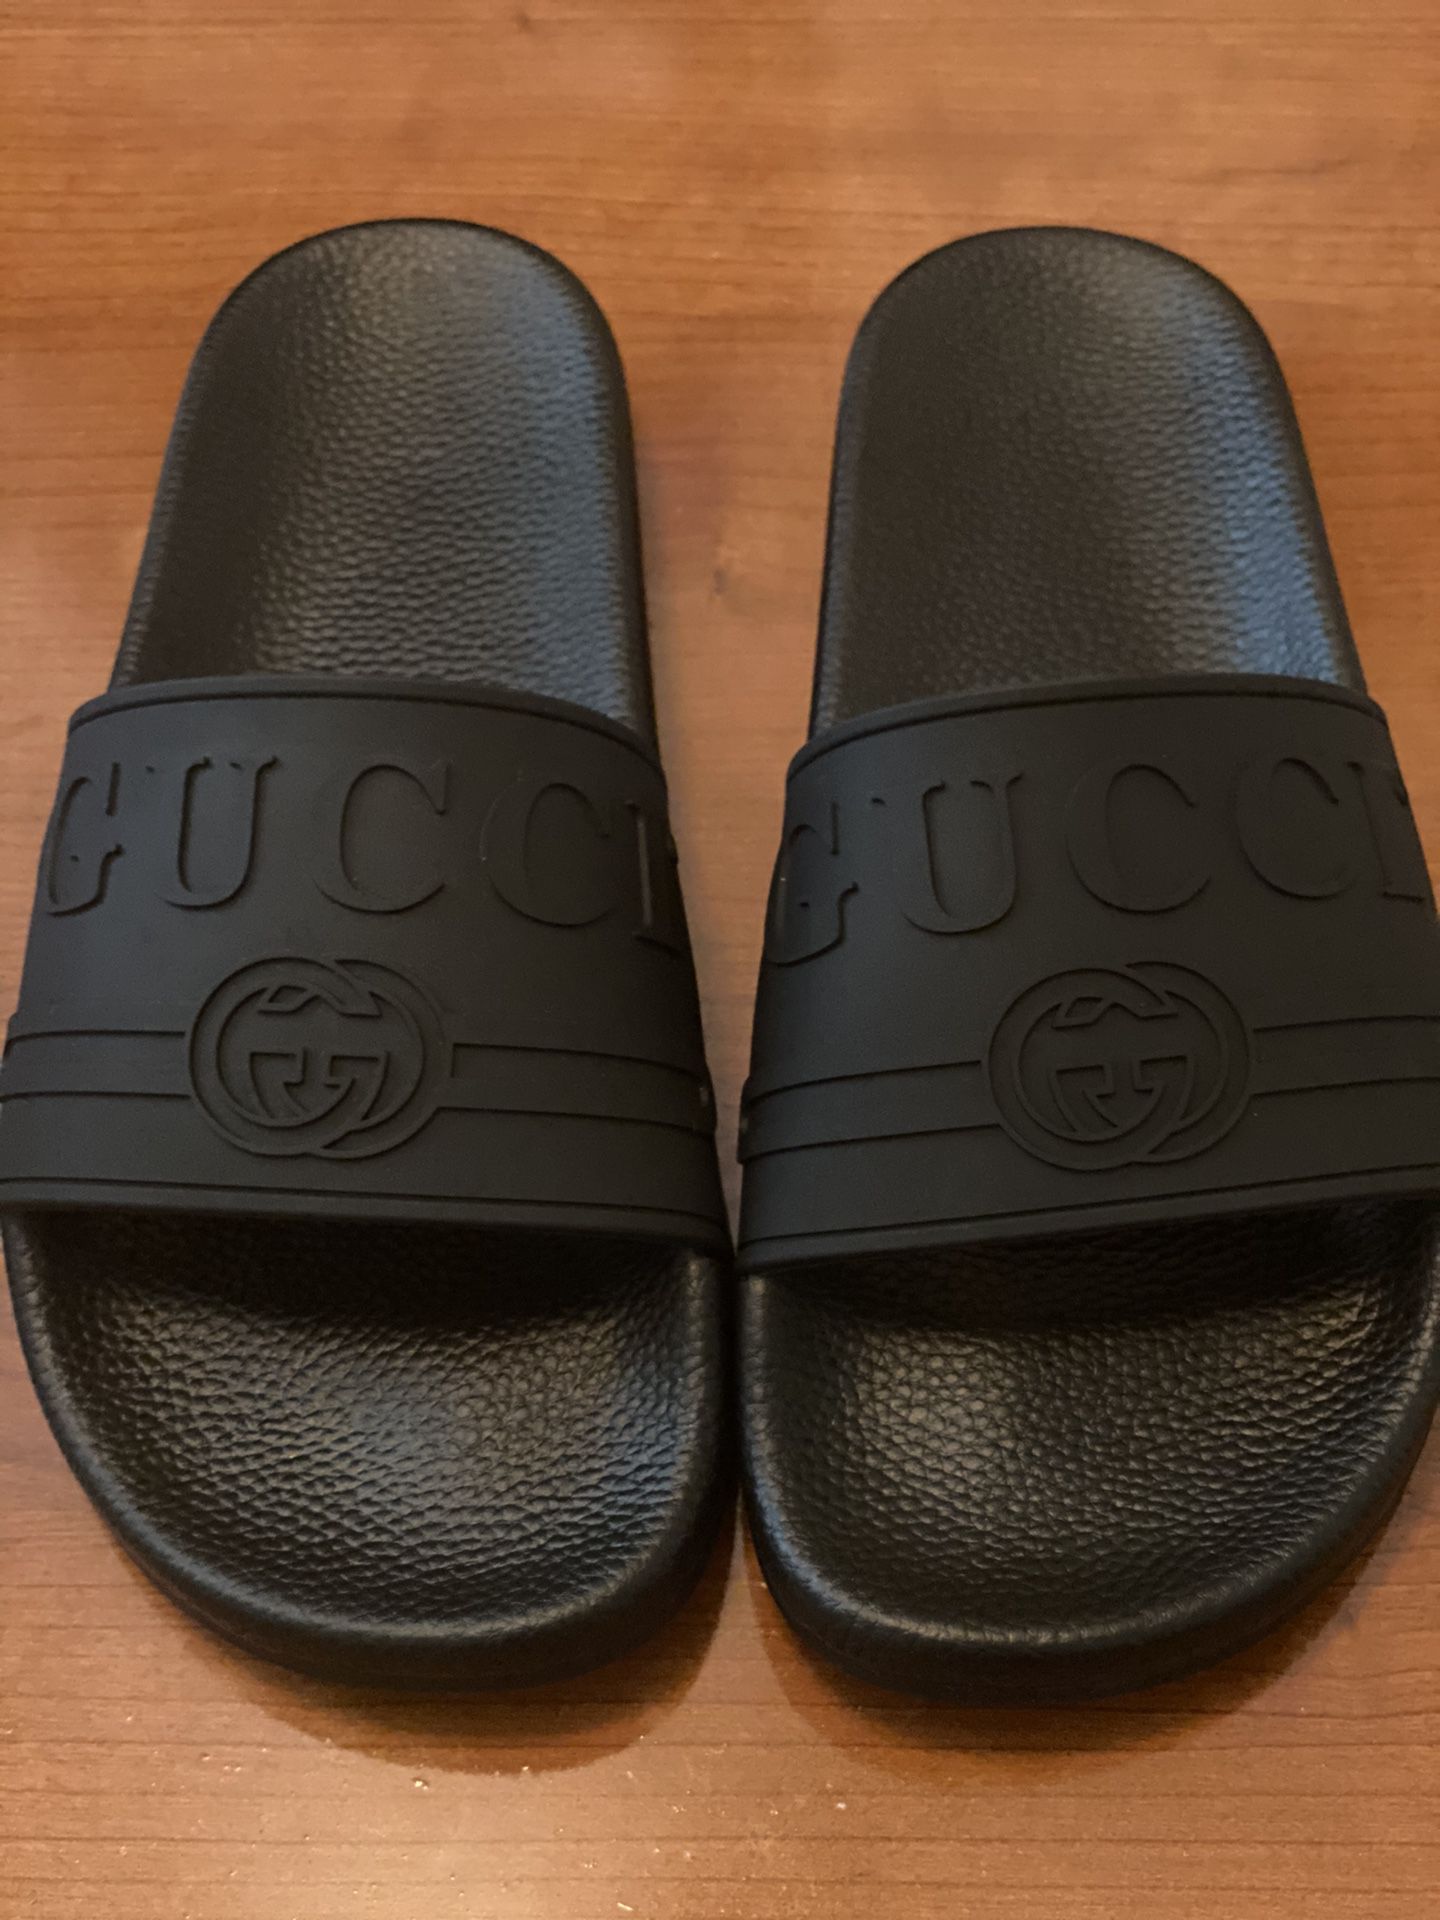 Gucci sandals slides size 9